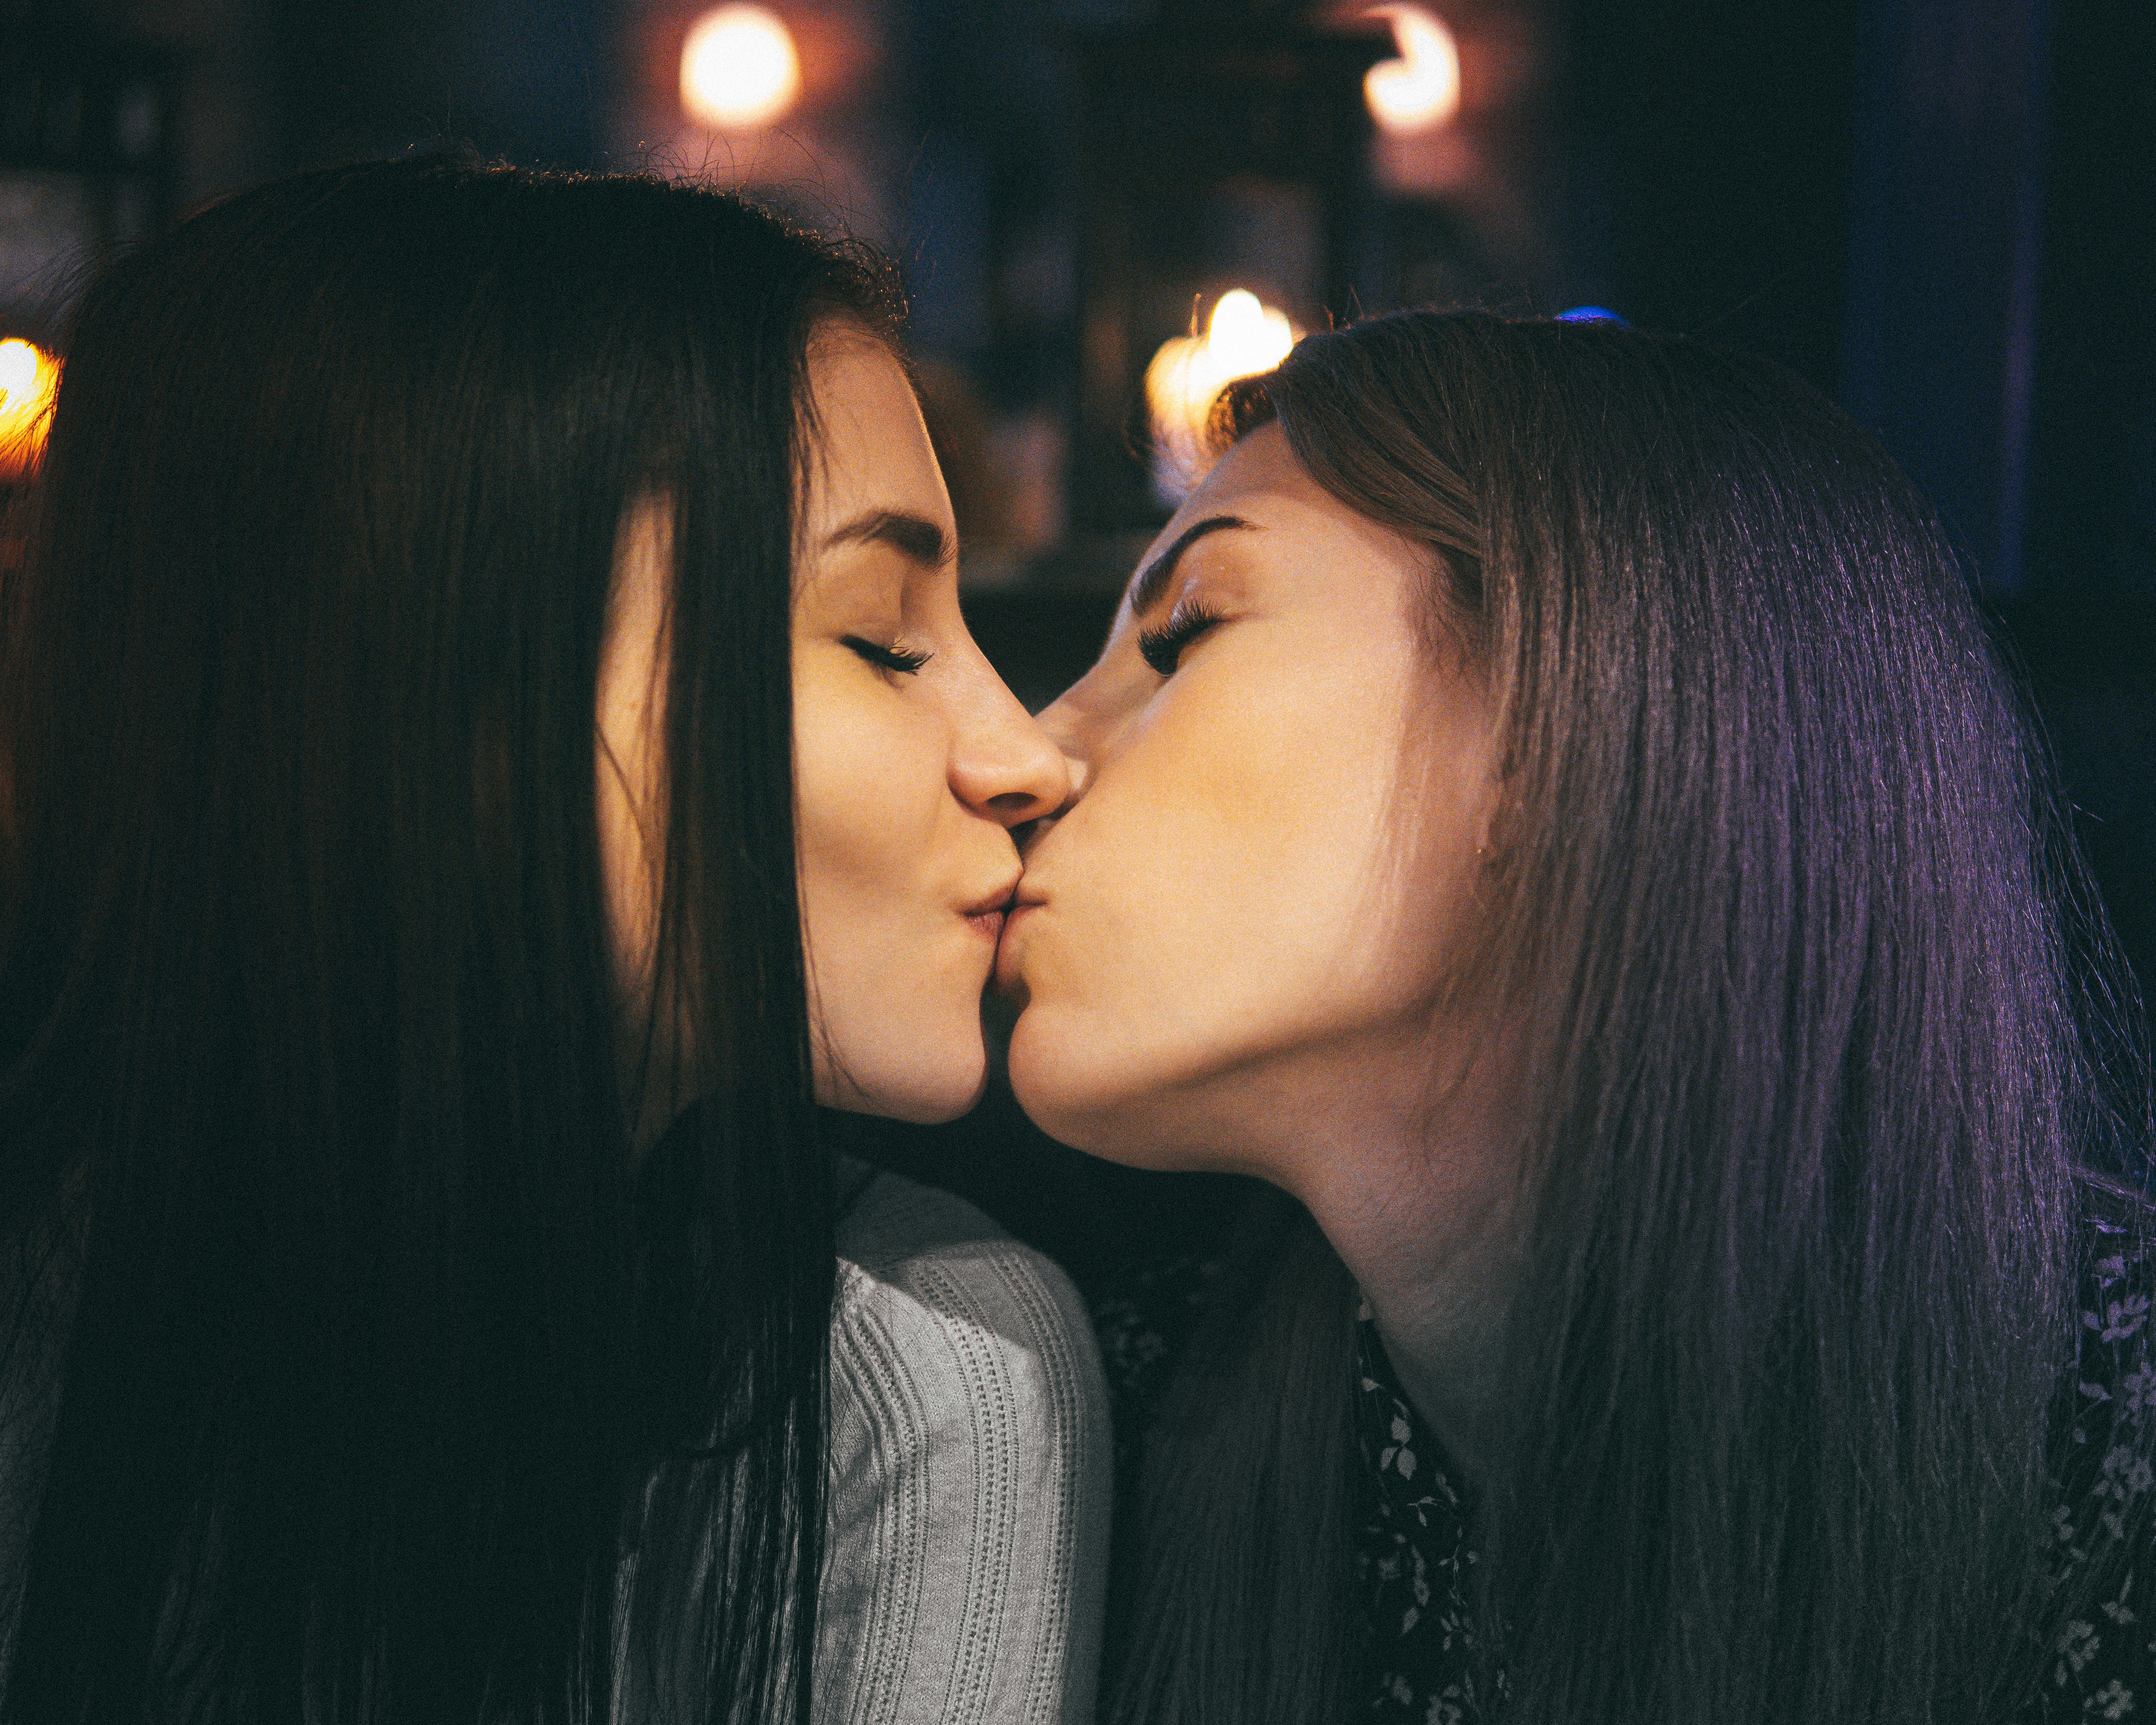 Лесбиянка двух красивых девушек. Поцелуй девушек. Поцелуй двух девушек. Красивый лесбийский поцелуй. Девушка целует девушку.